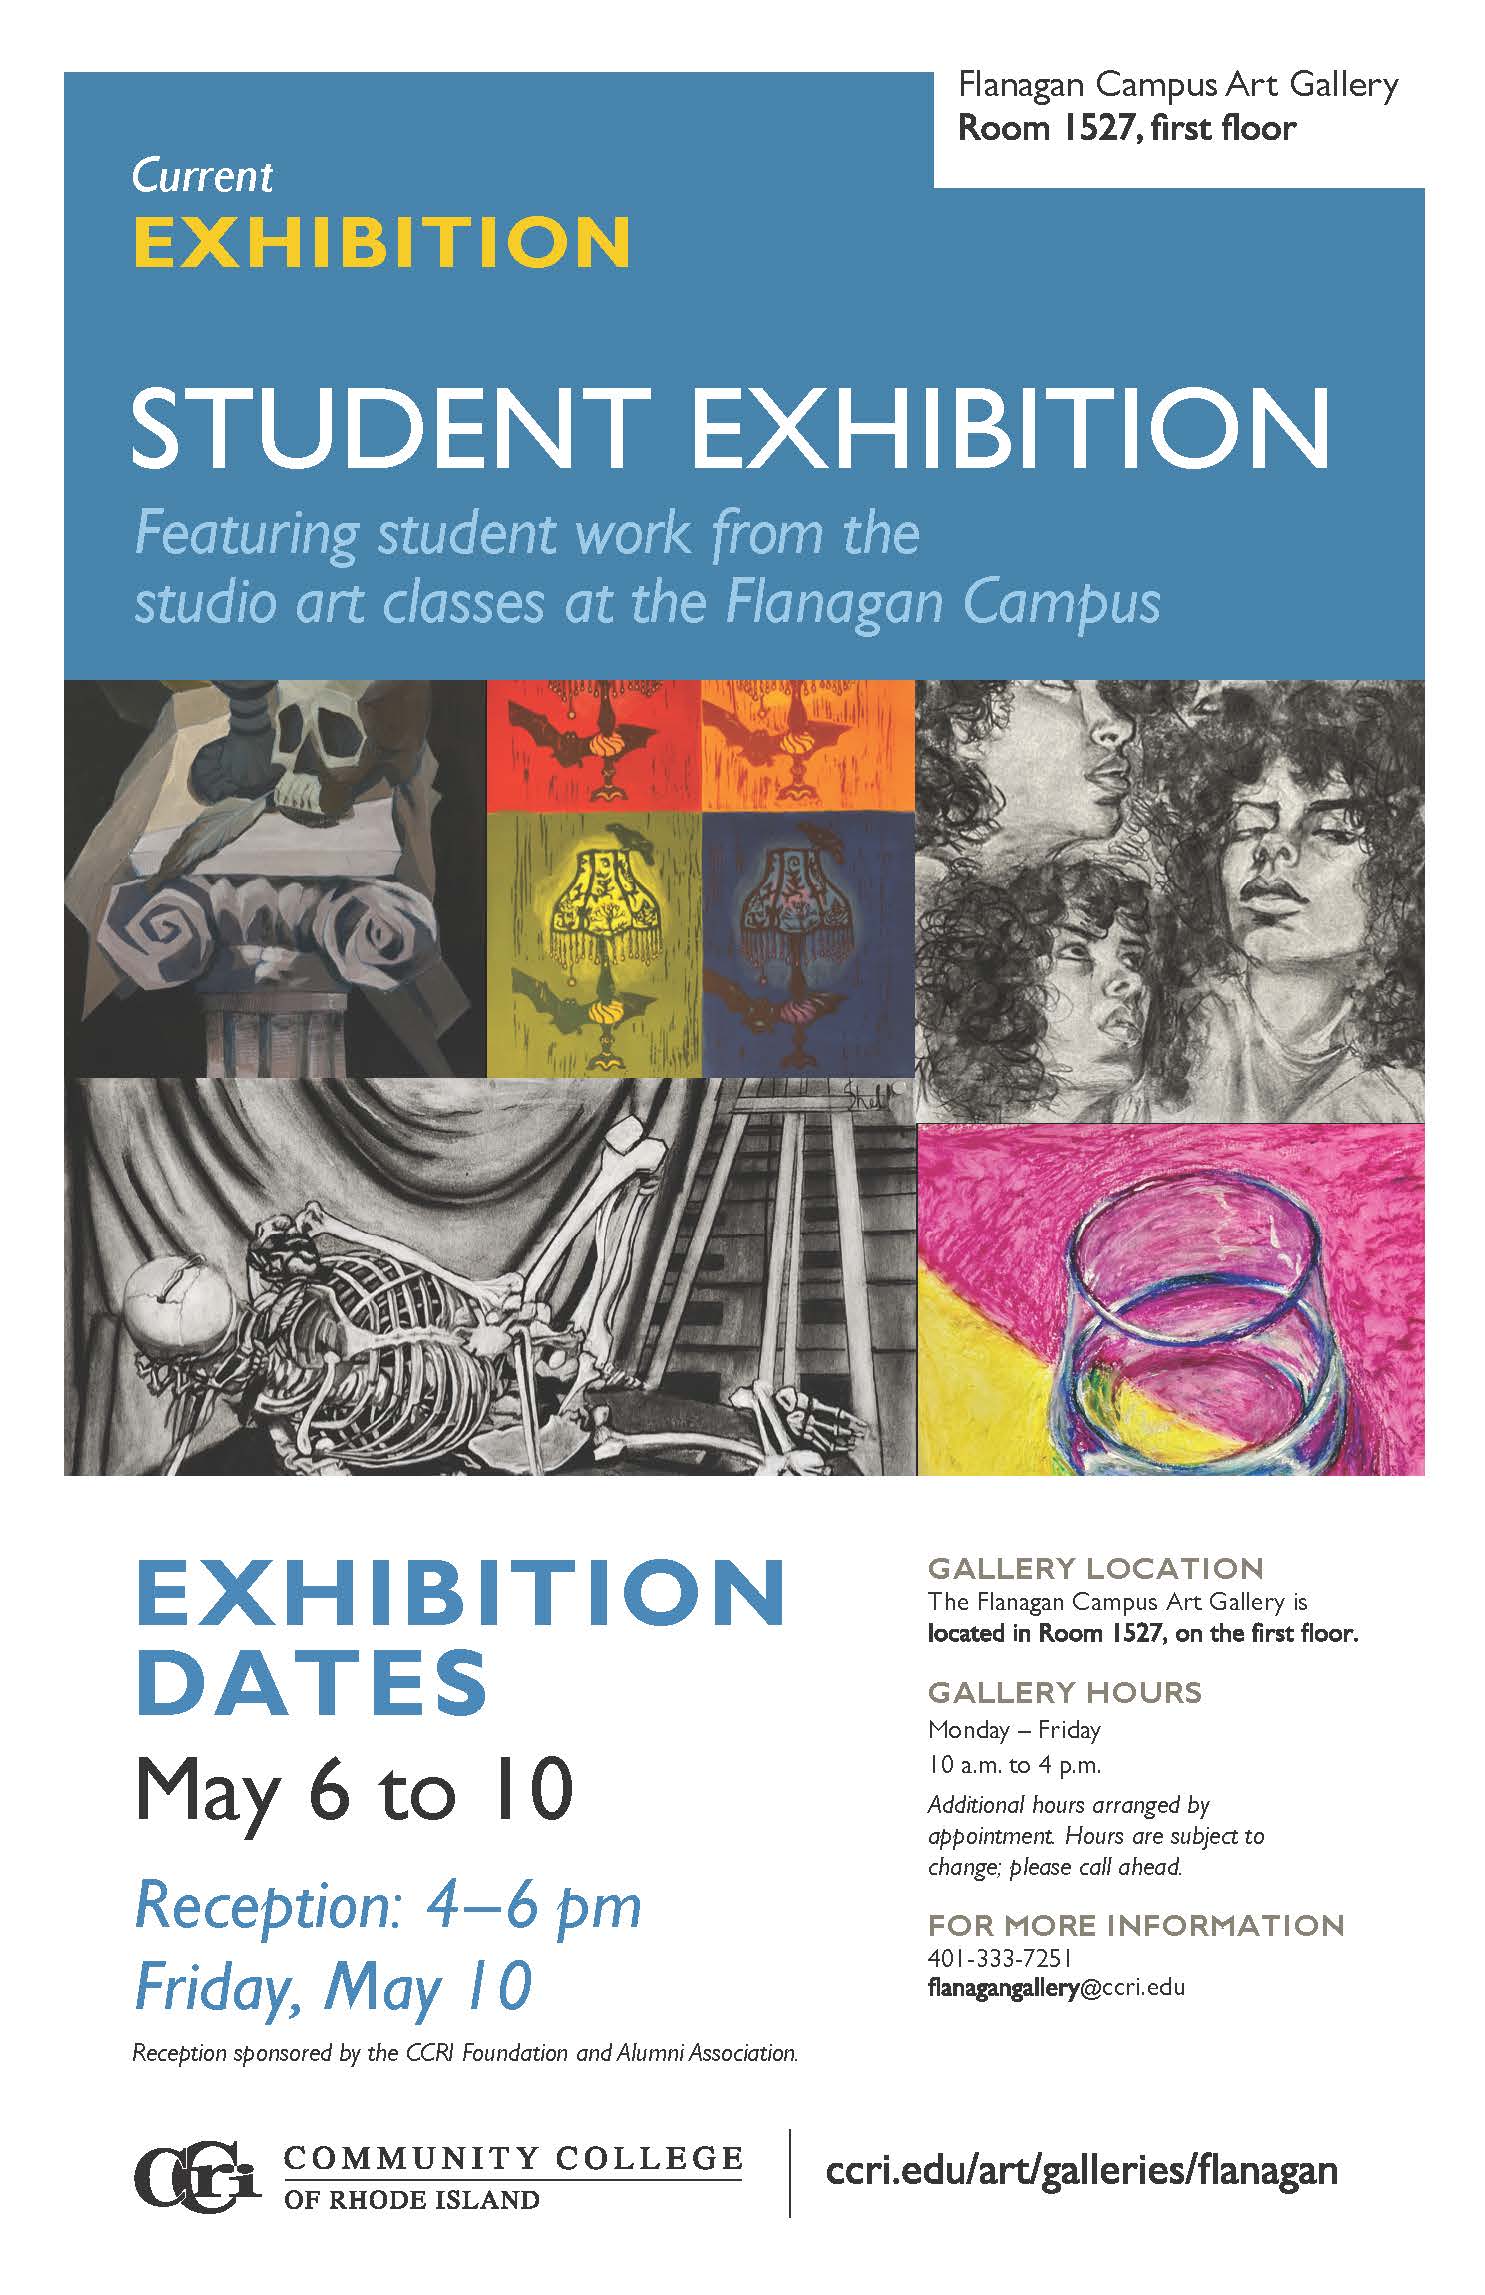 Student Exhibition